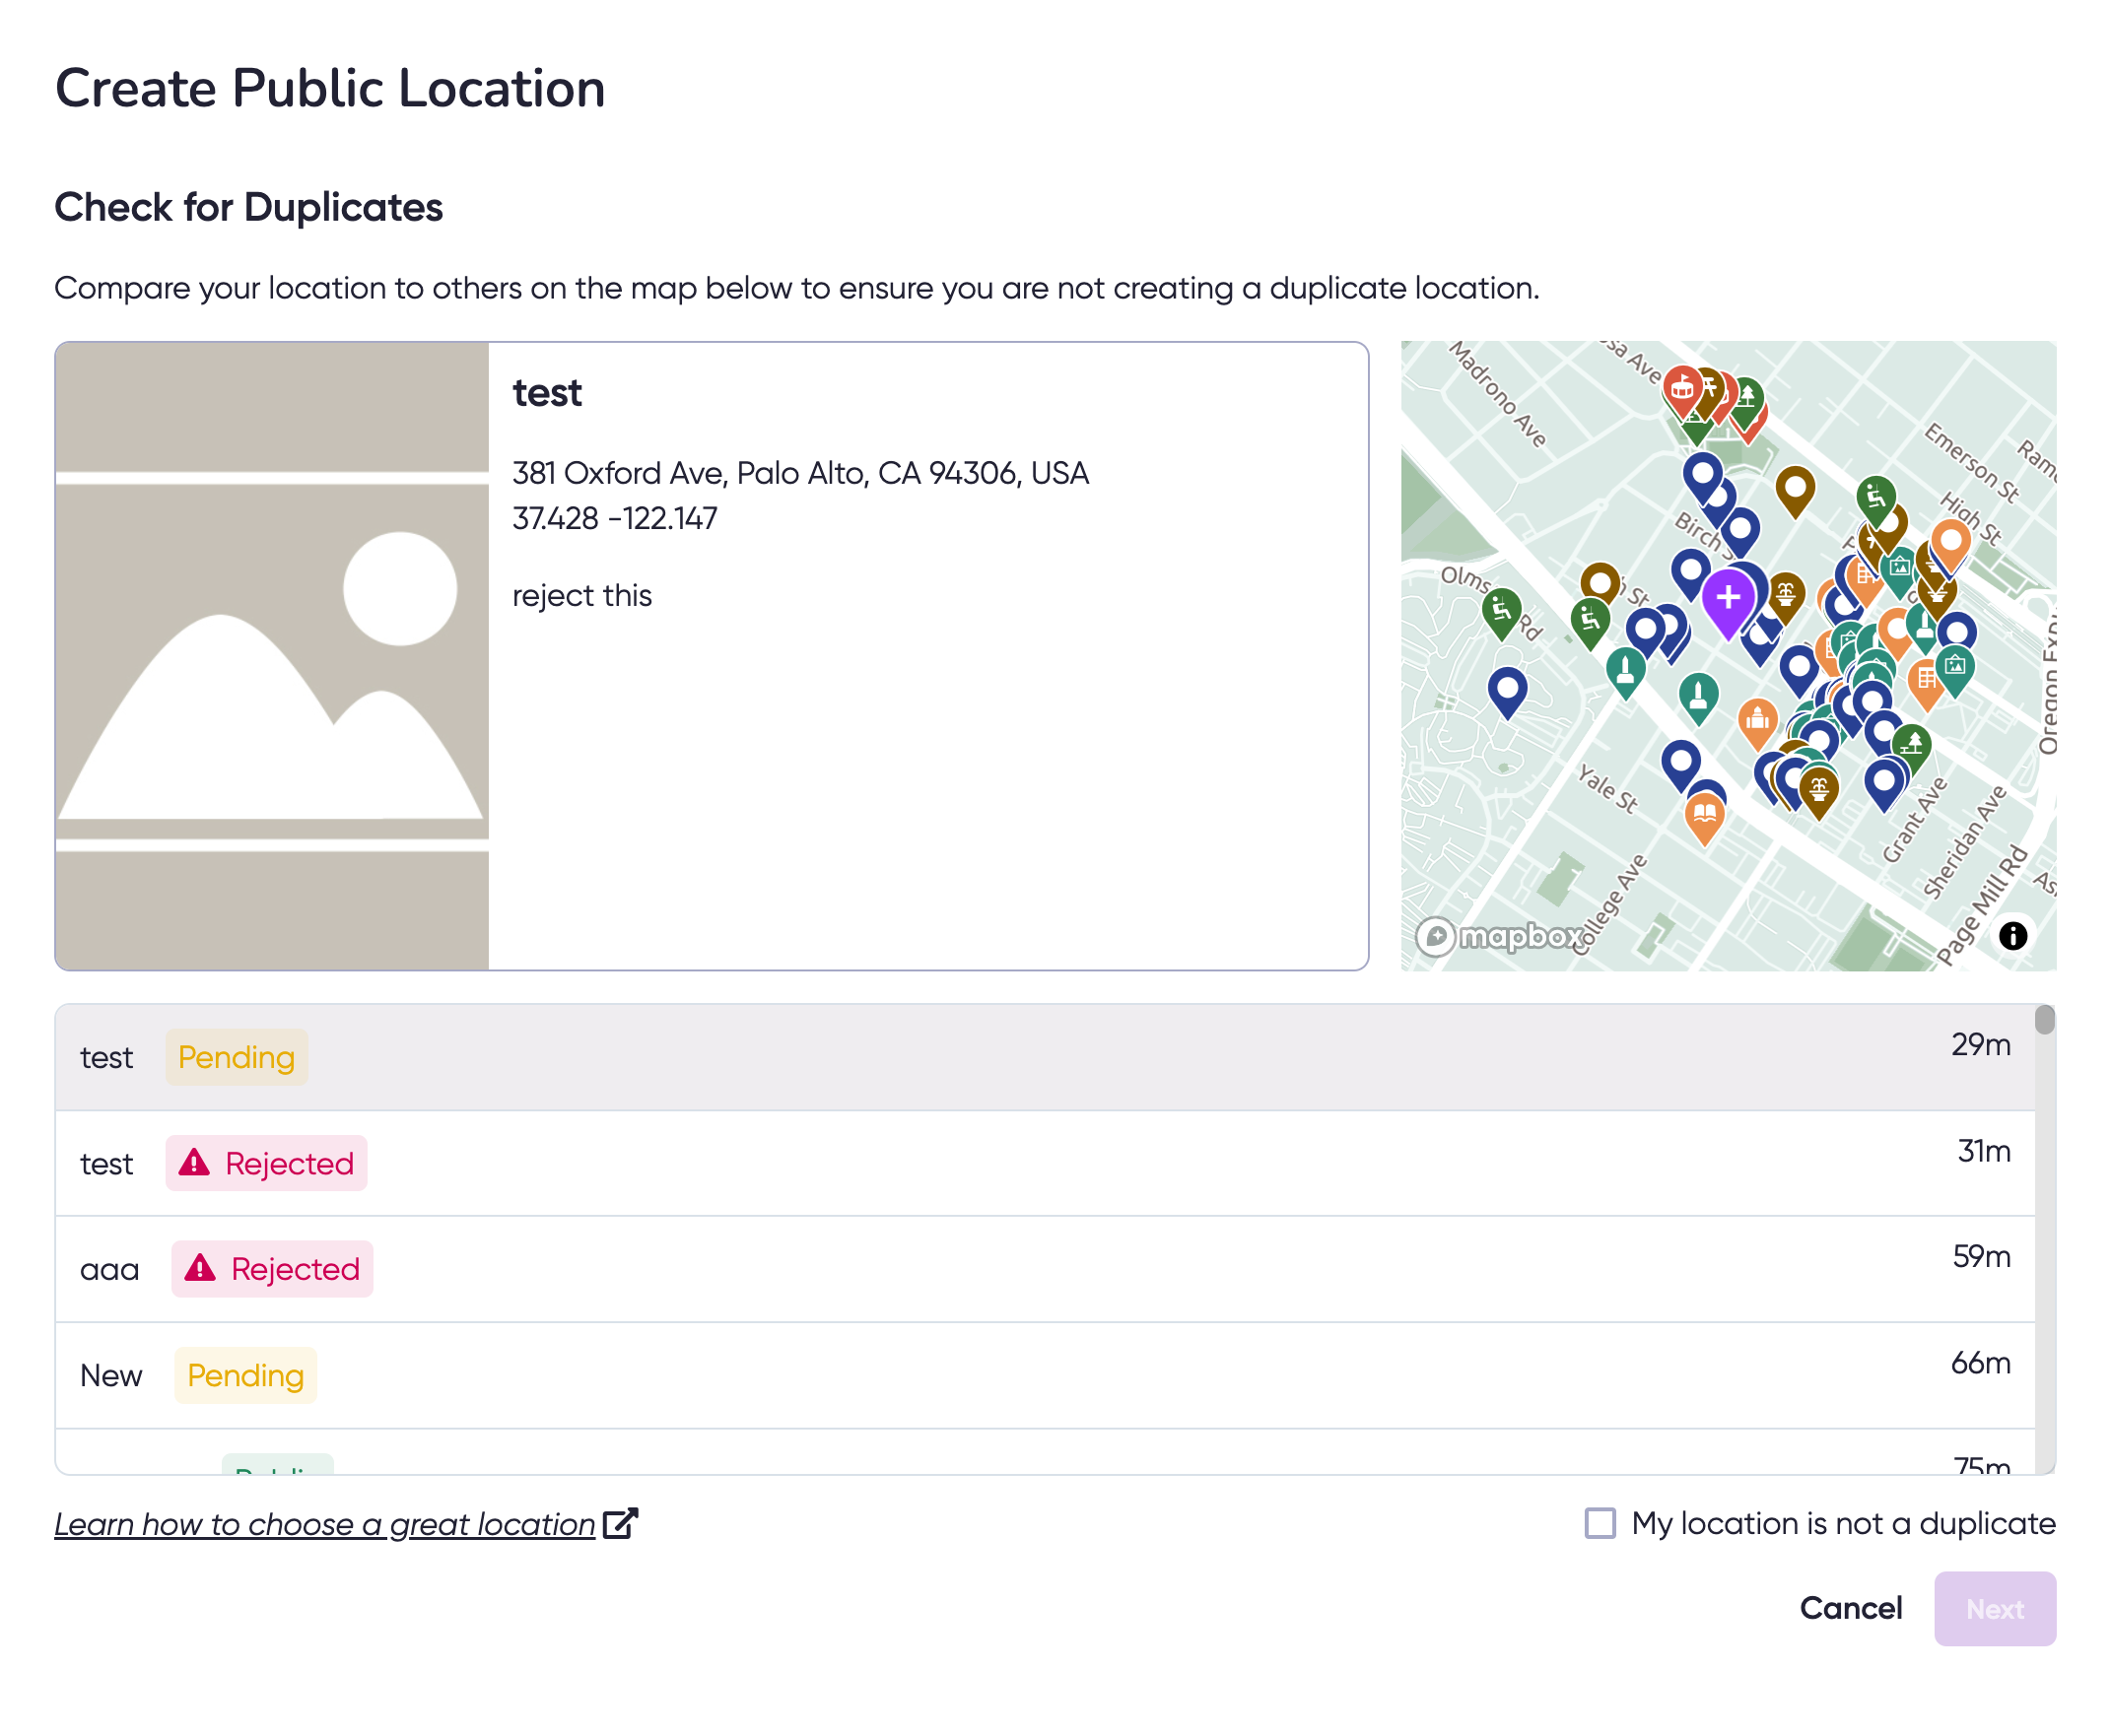 Create Public Location Dialog